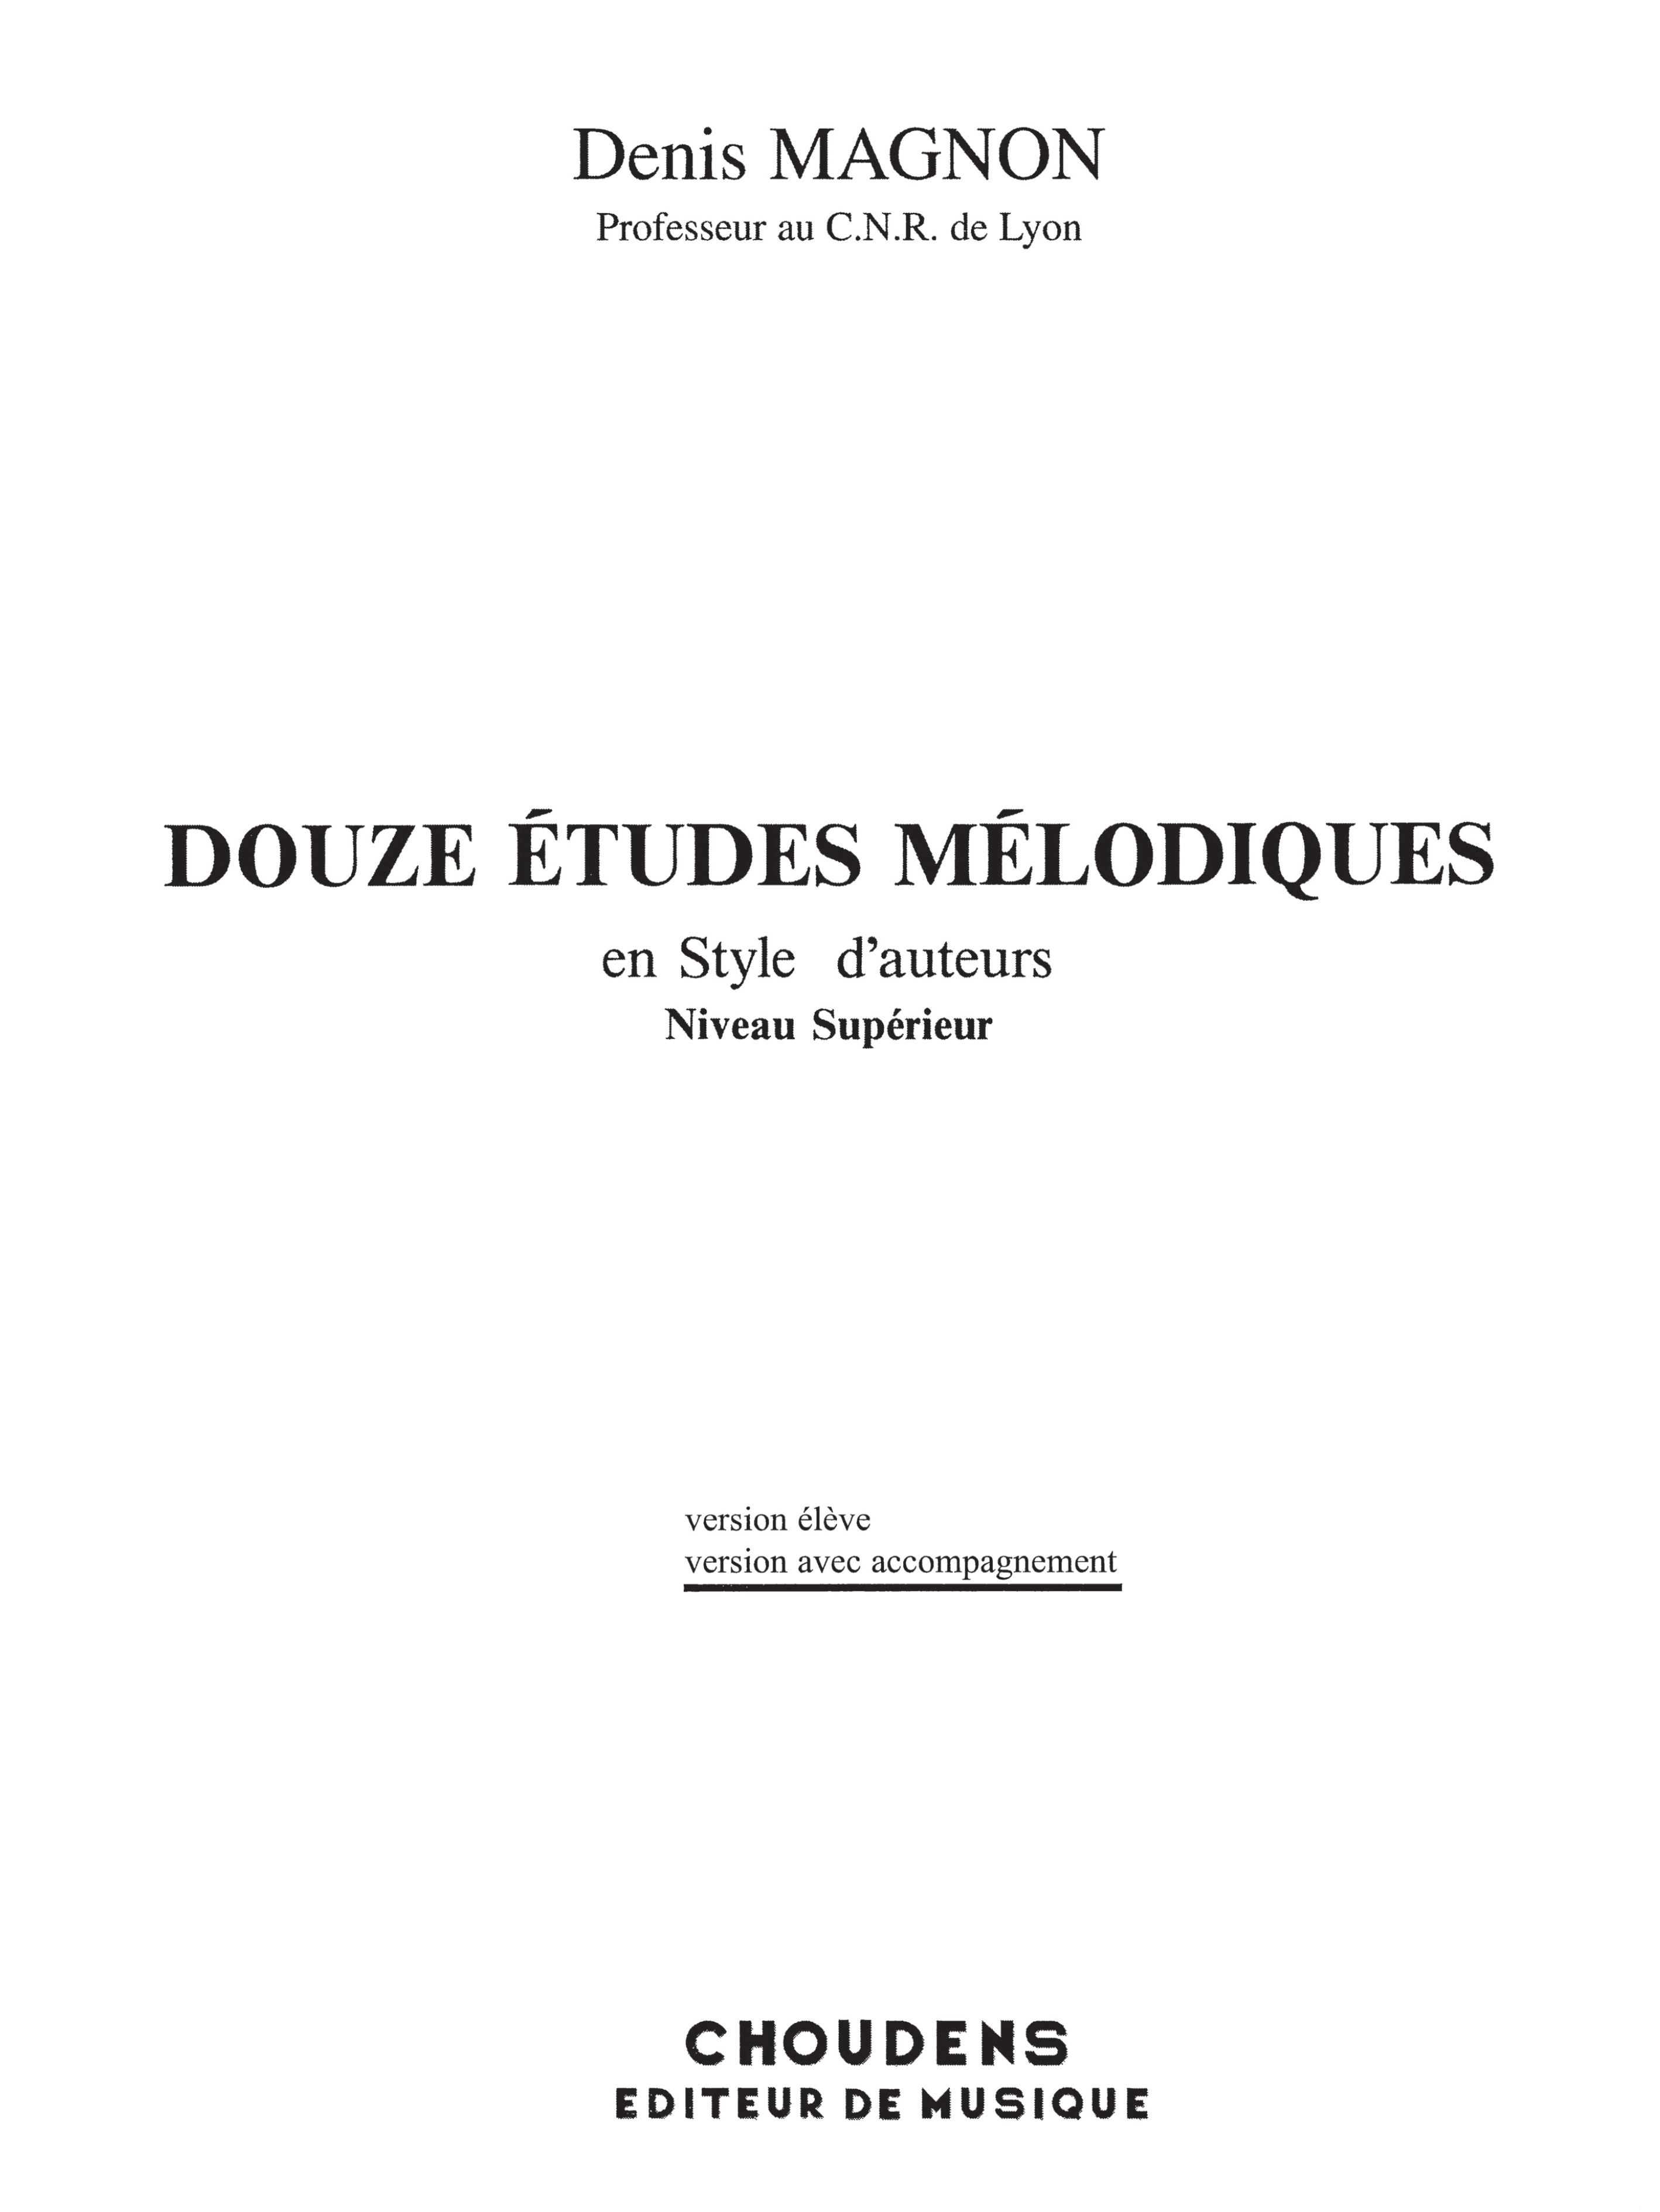 Denis Magnon: Douze Etudes Melodiques en Style d'Auteurs: Voice: Vocal Album